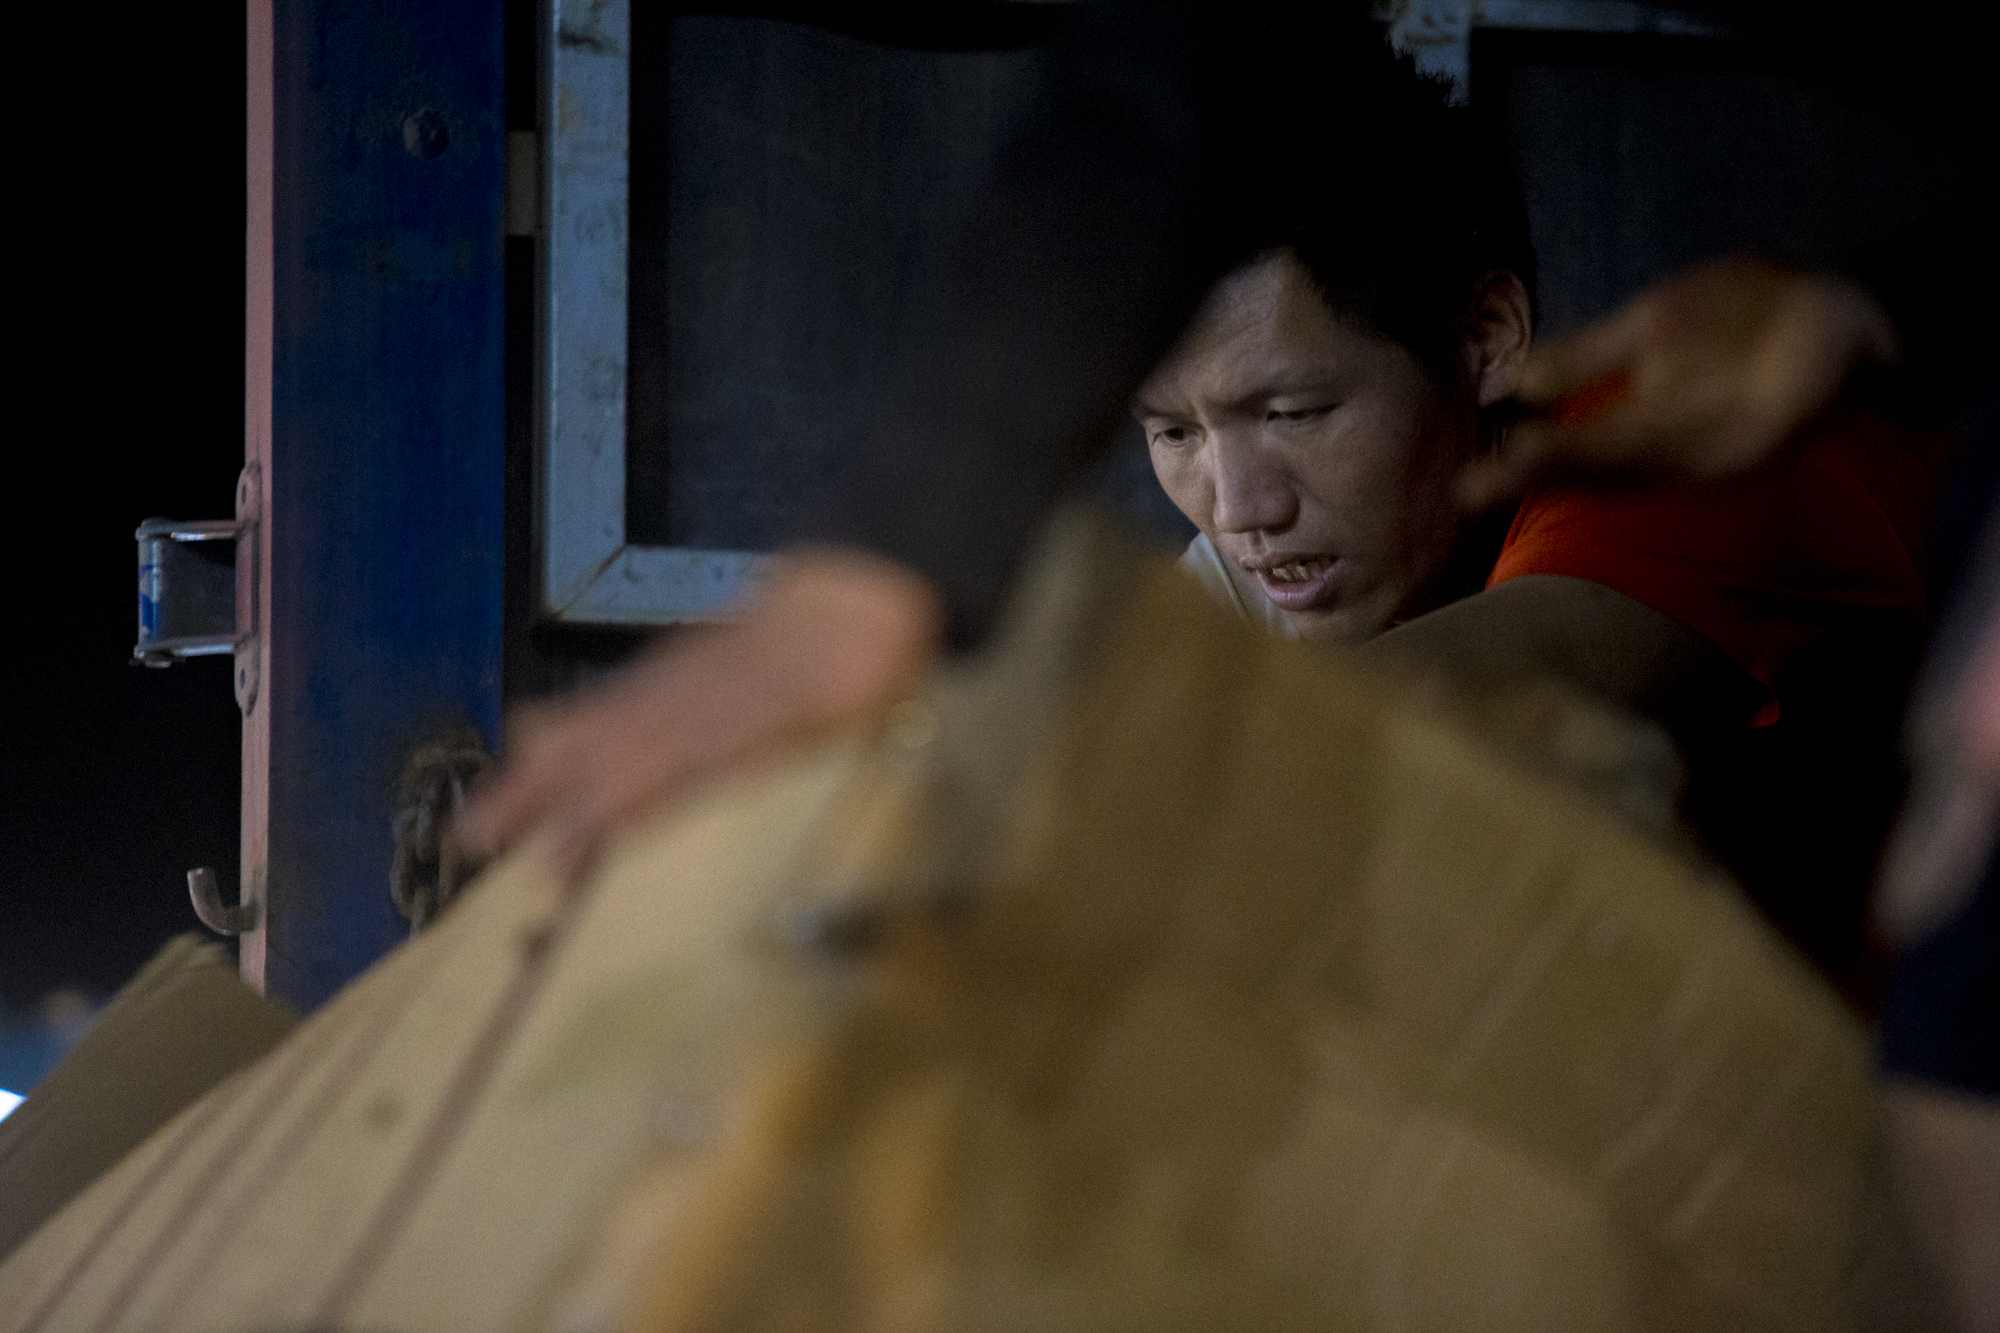 Cửu vạn chợ đầu mối ở Hà Nội làm xuyên đêm những ngày rét mướt, khuân vác 300 kiện hàng mỗi ngày - Ảnh 7.